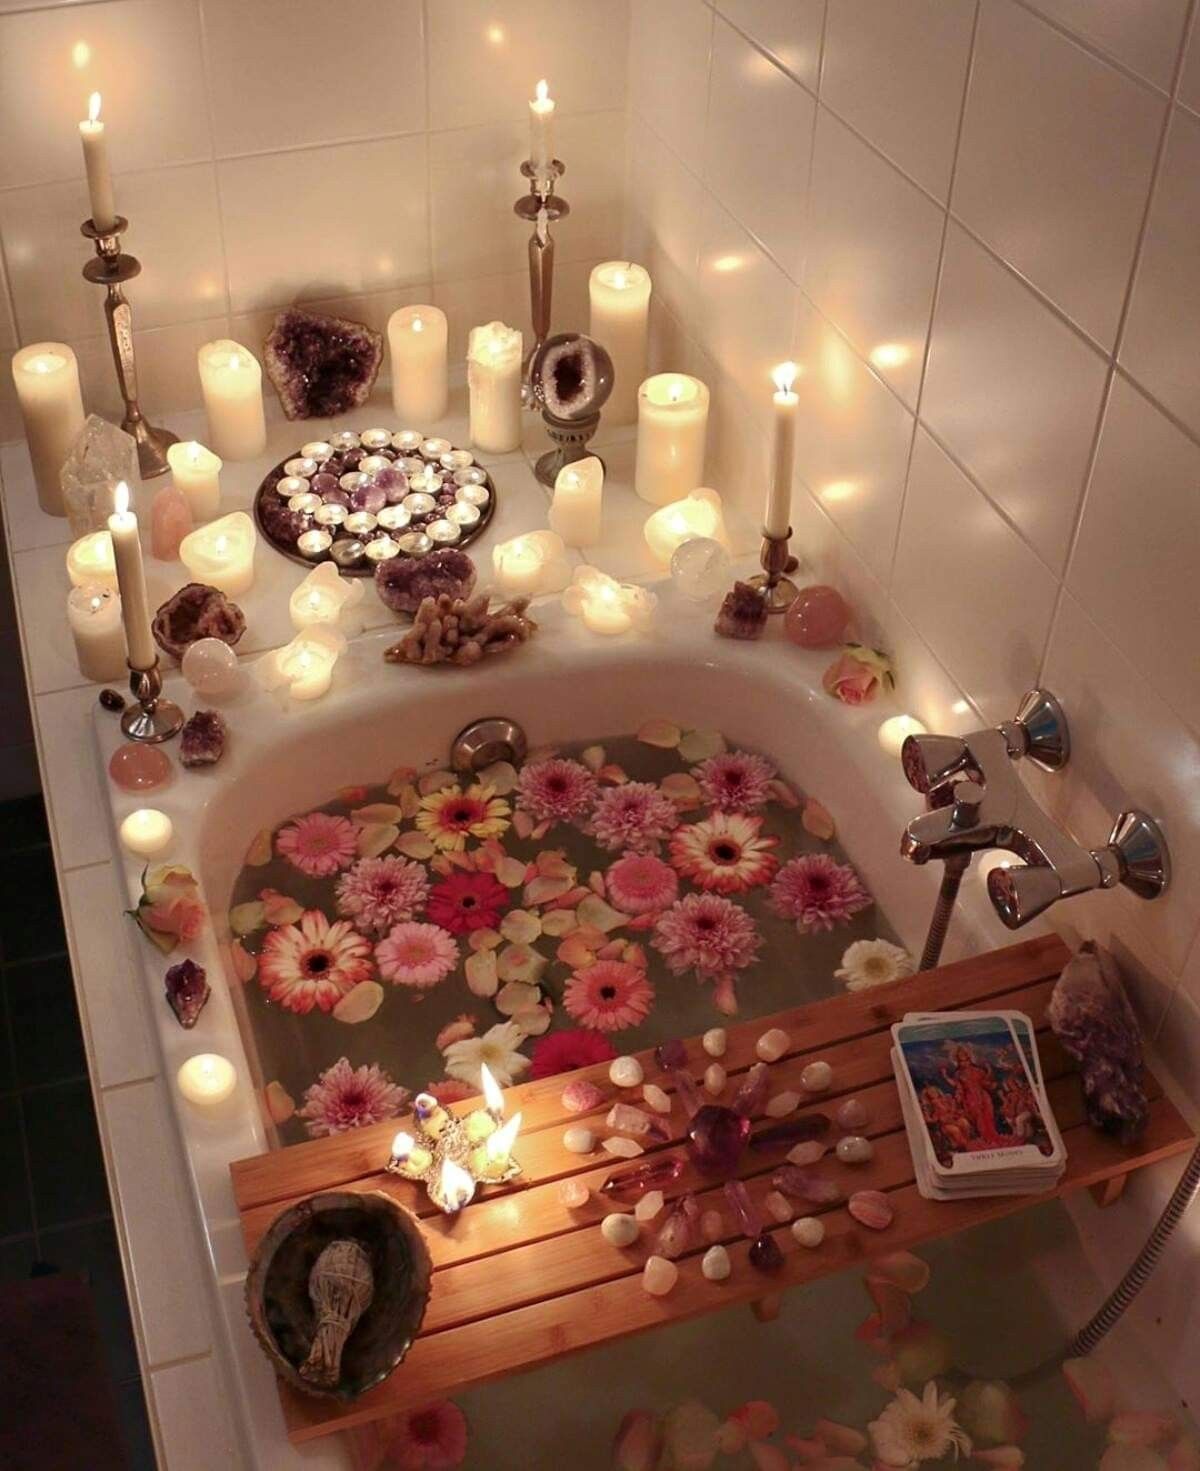 bath with crystals